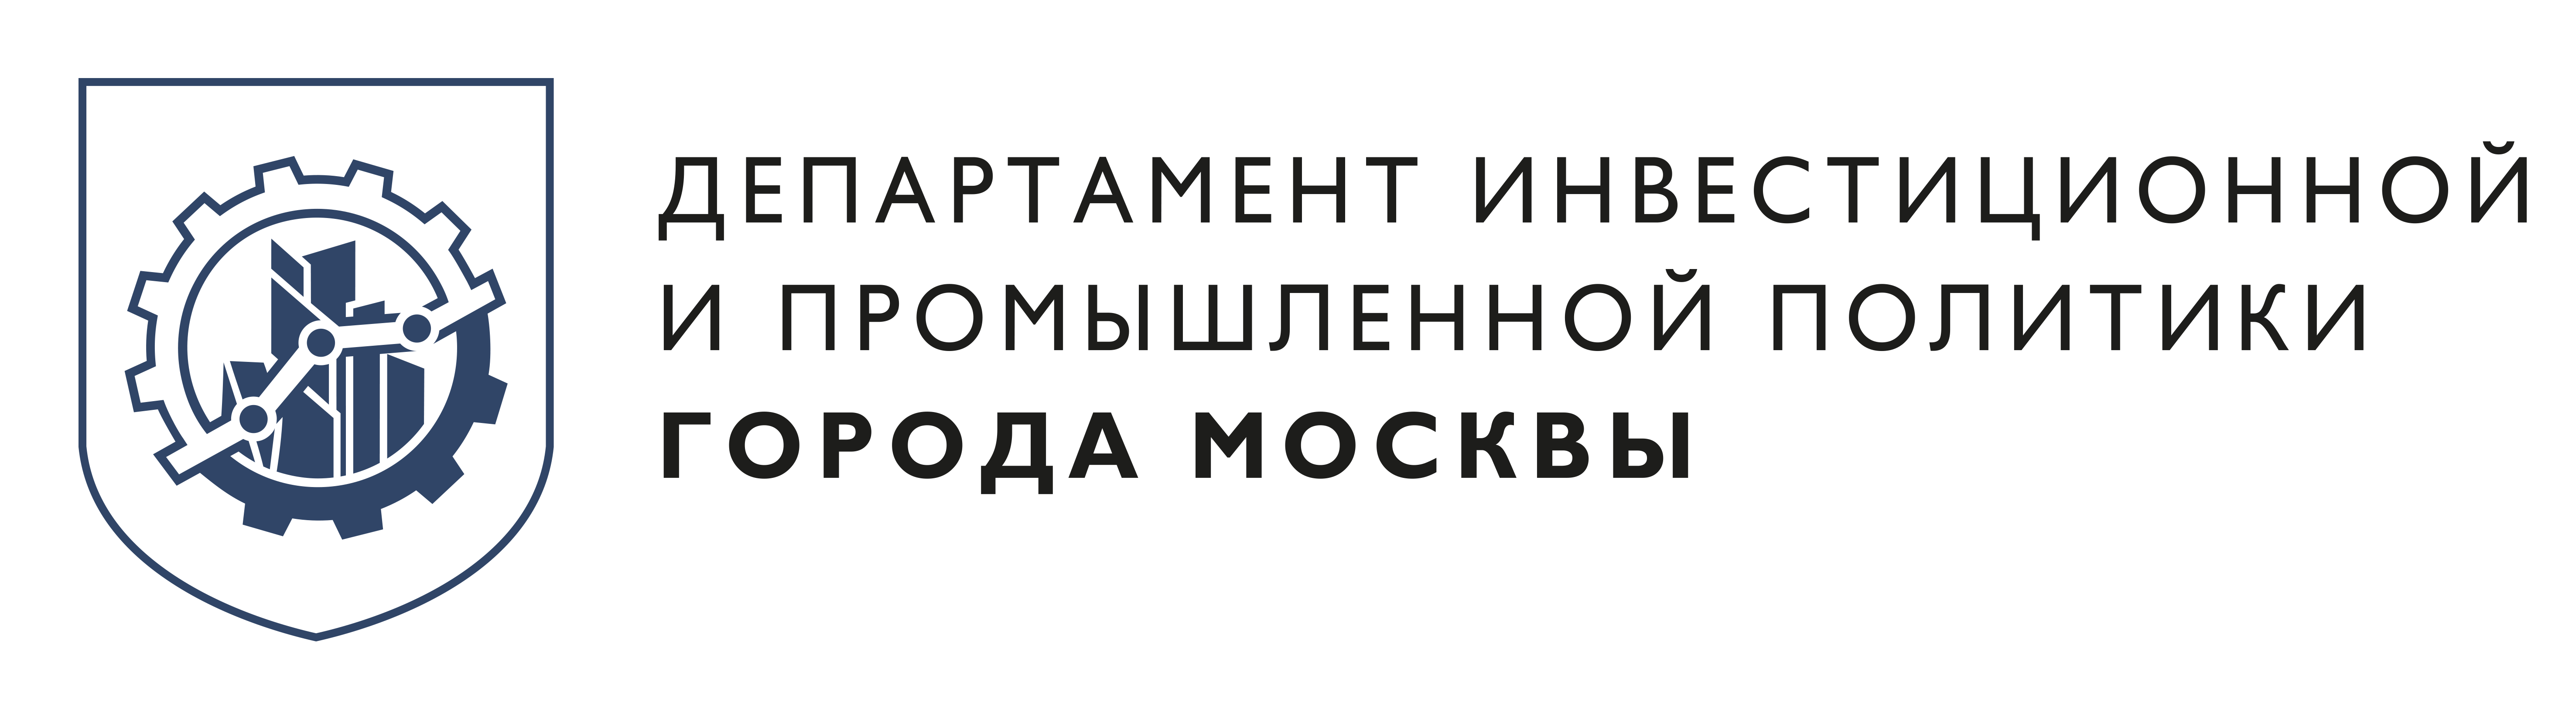 Оперативный штаб по экономическим вопросам Москвы запустил онлайн-сервис для поддержки бизнеса - фото 1